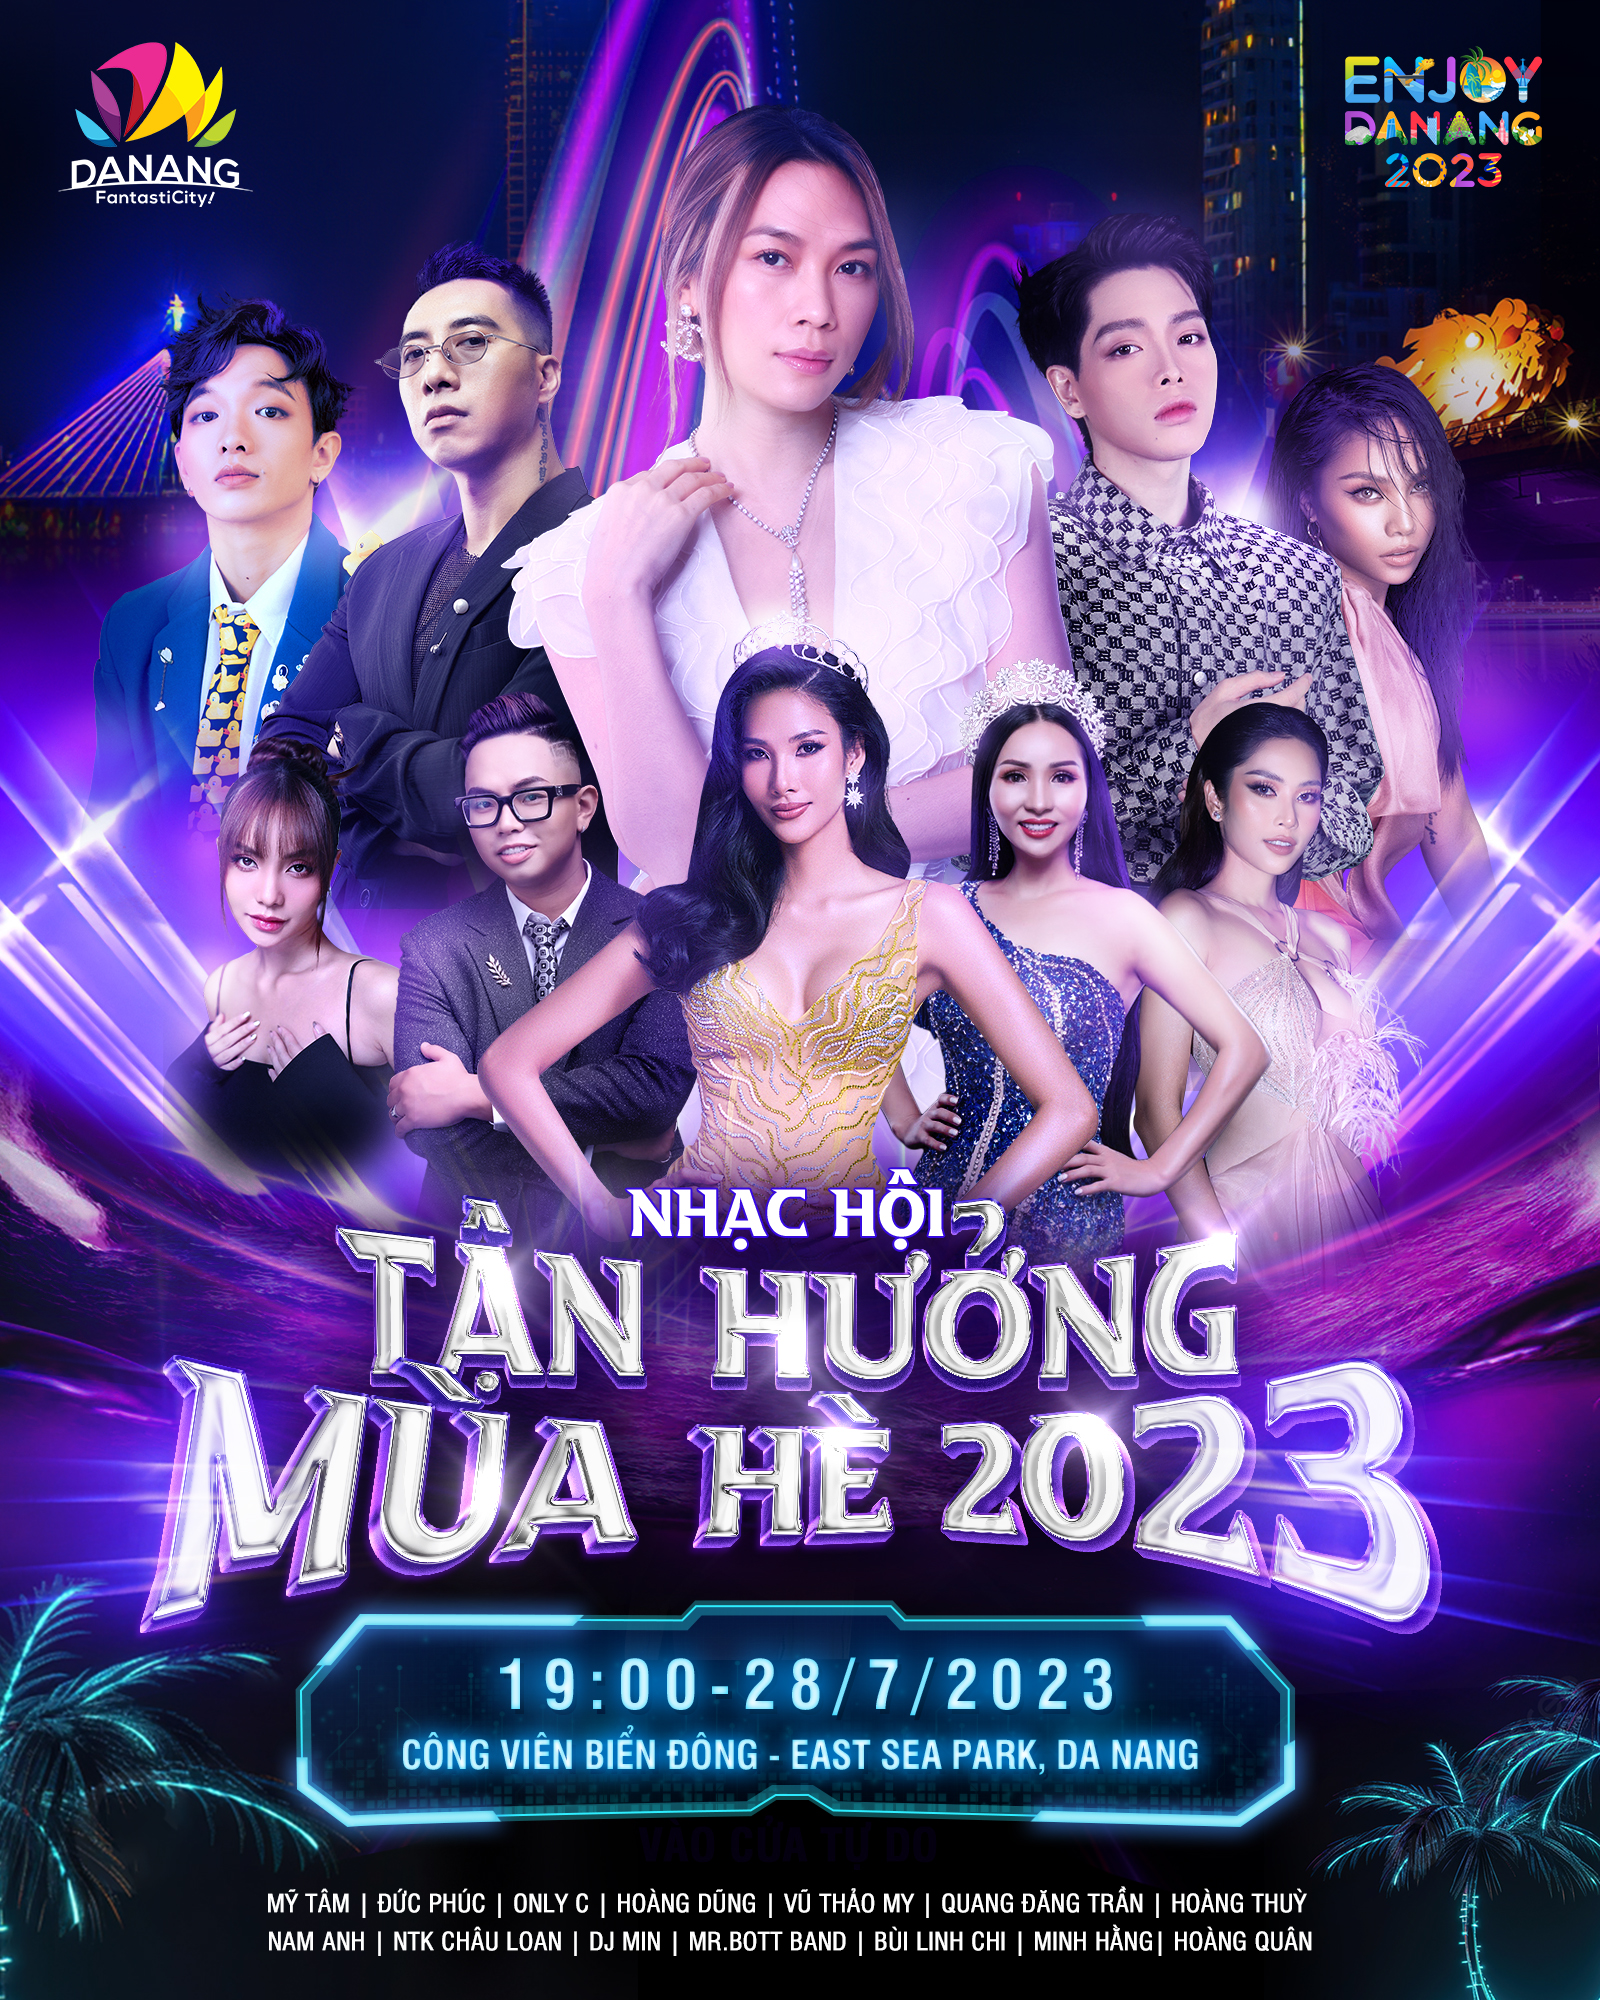 Đêm Nhạc hội Tận hưởng mùa hè Đà Nẵng 2023 quy tụ dàn sao đình đám của showbiz Việt. Ảnh: Danang FantastiCity 